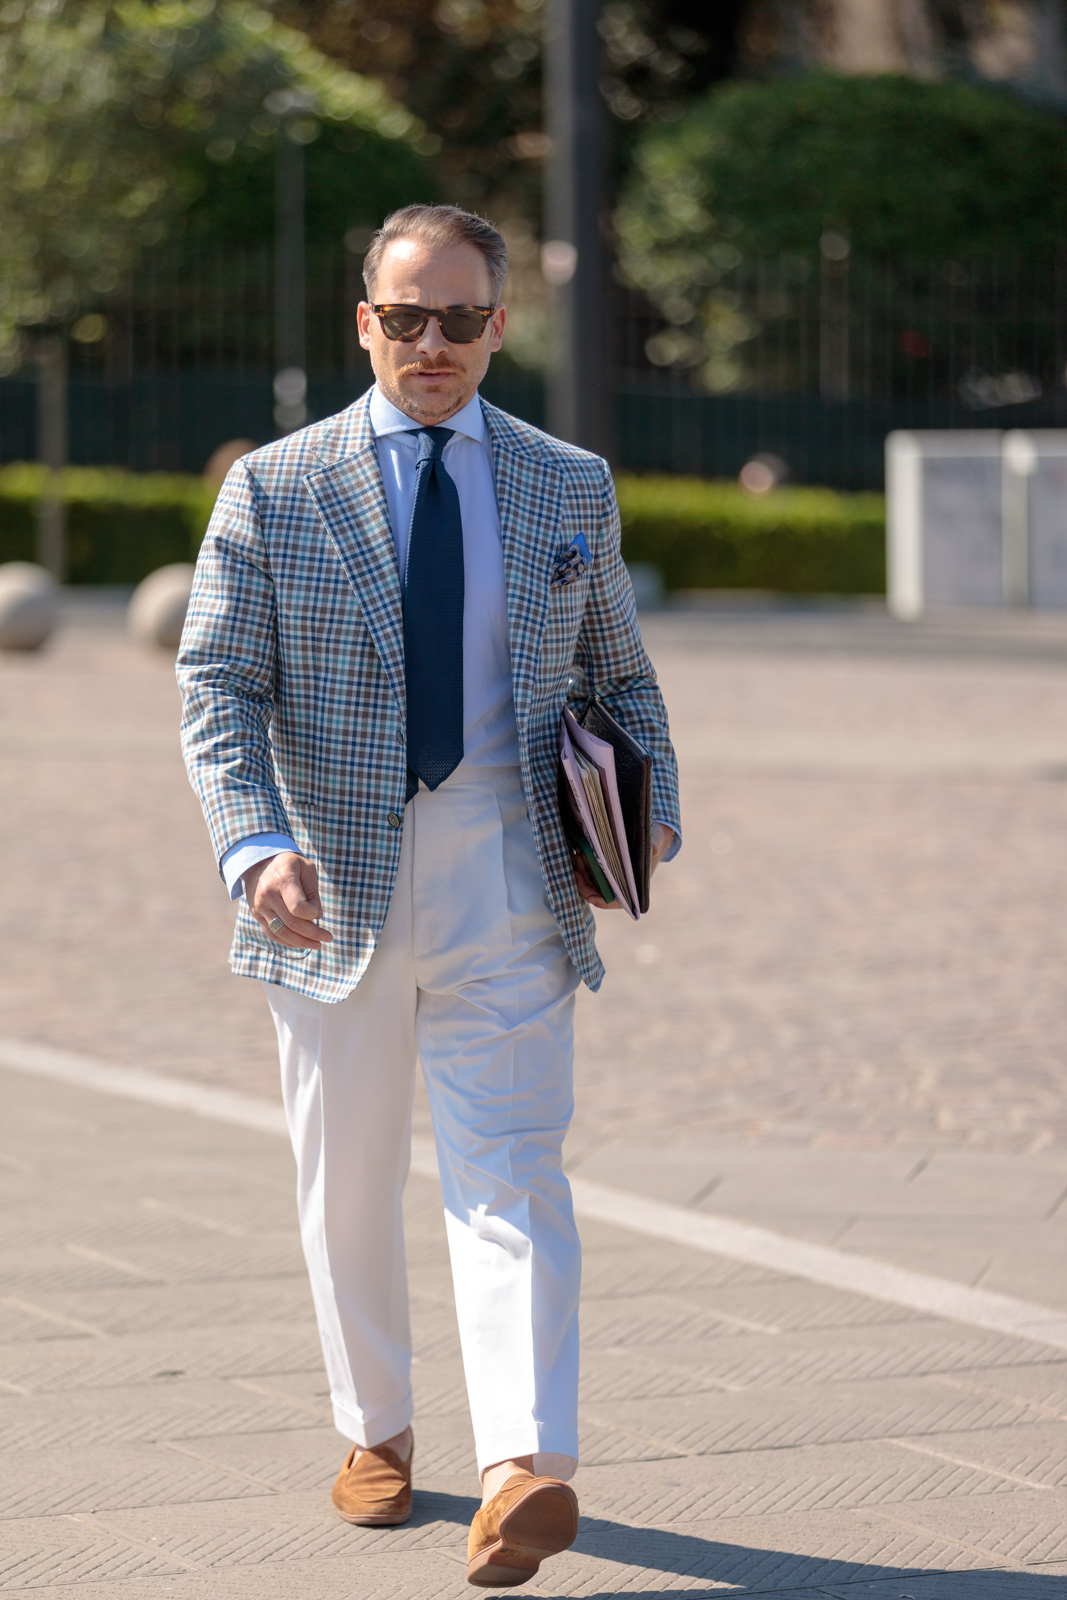 Pitti Uomo 102—My Street Style & Fair Photos – Menswear Musings